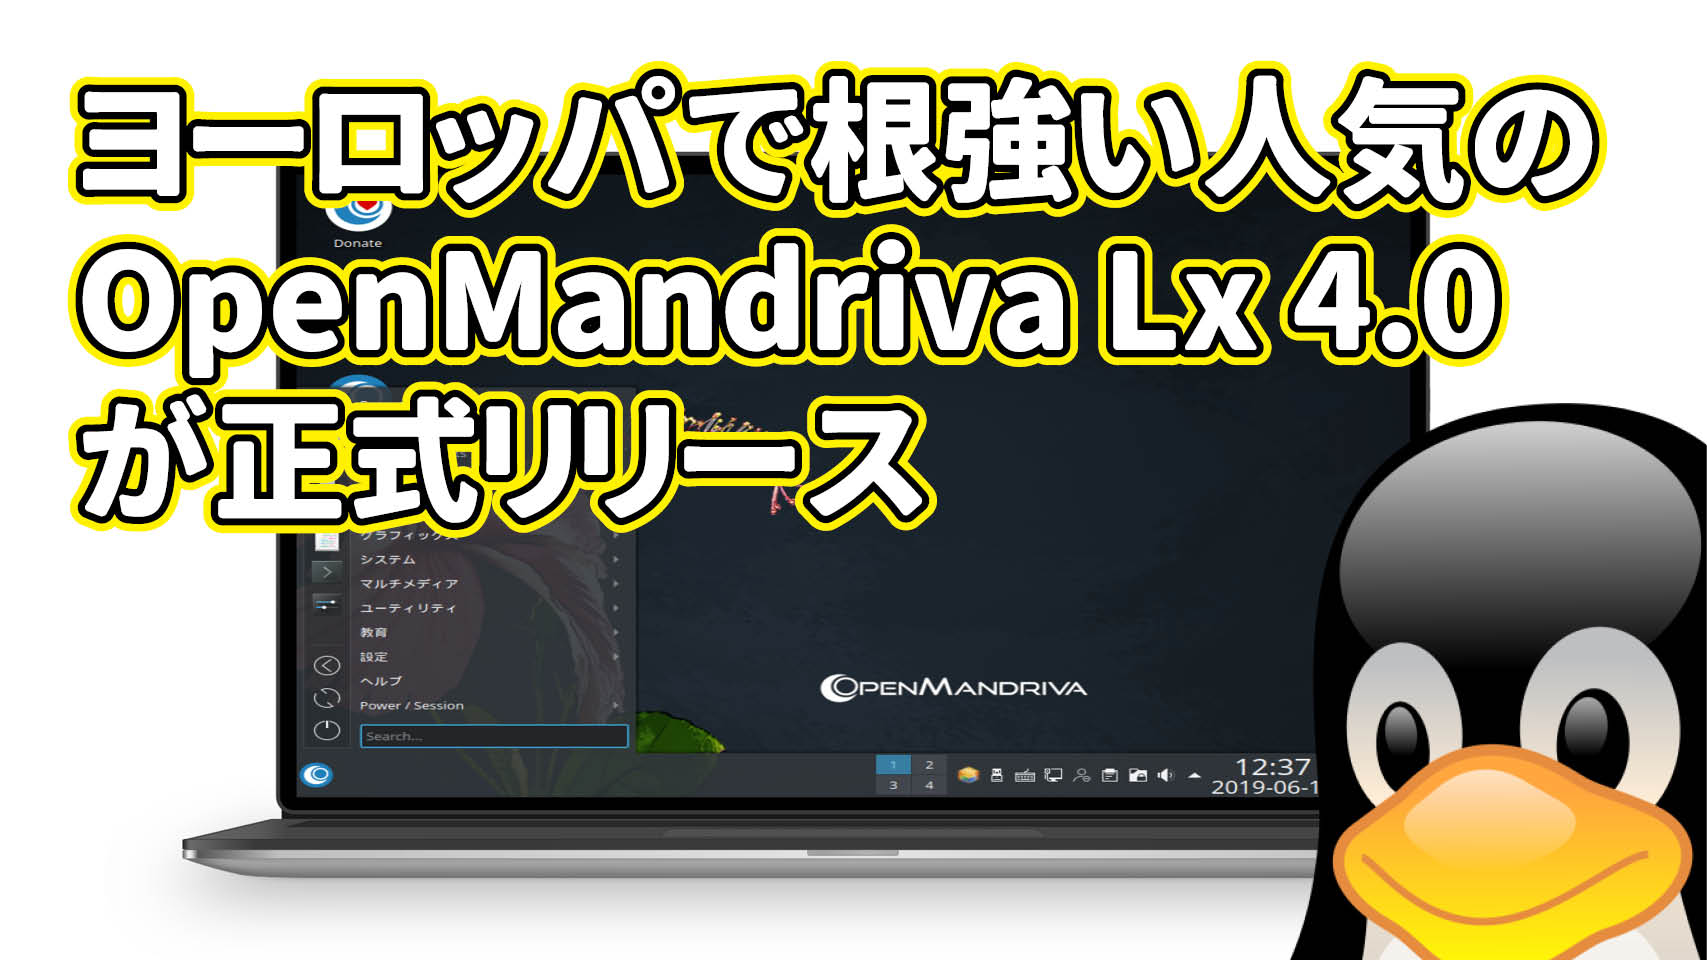 ヨーロッパで根強い人気の OpenMandriva Lx 4.0 が正式リリース